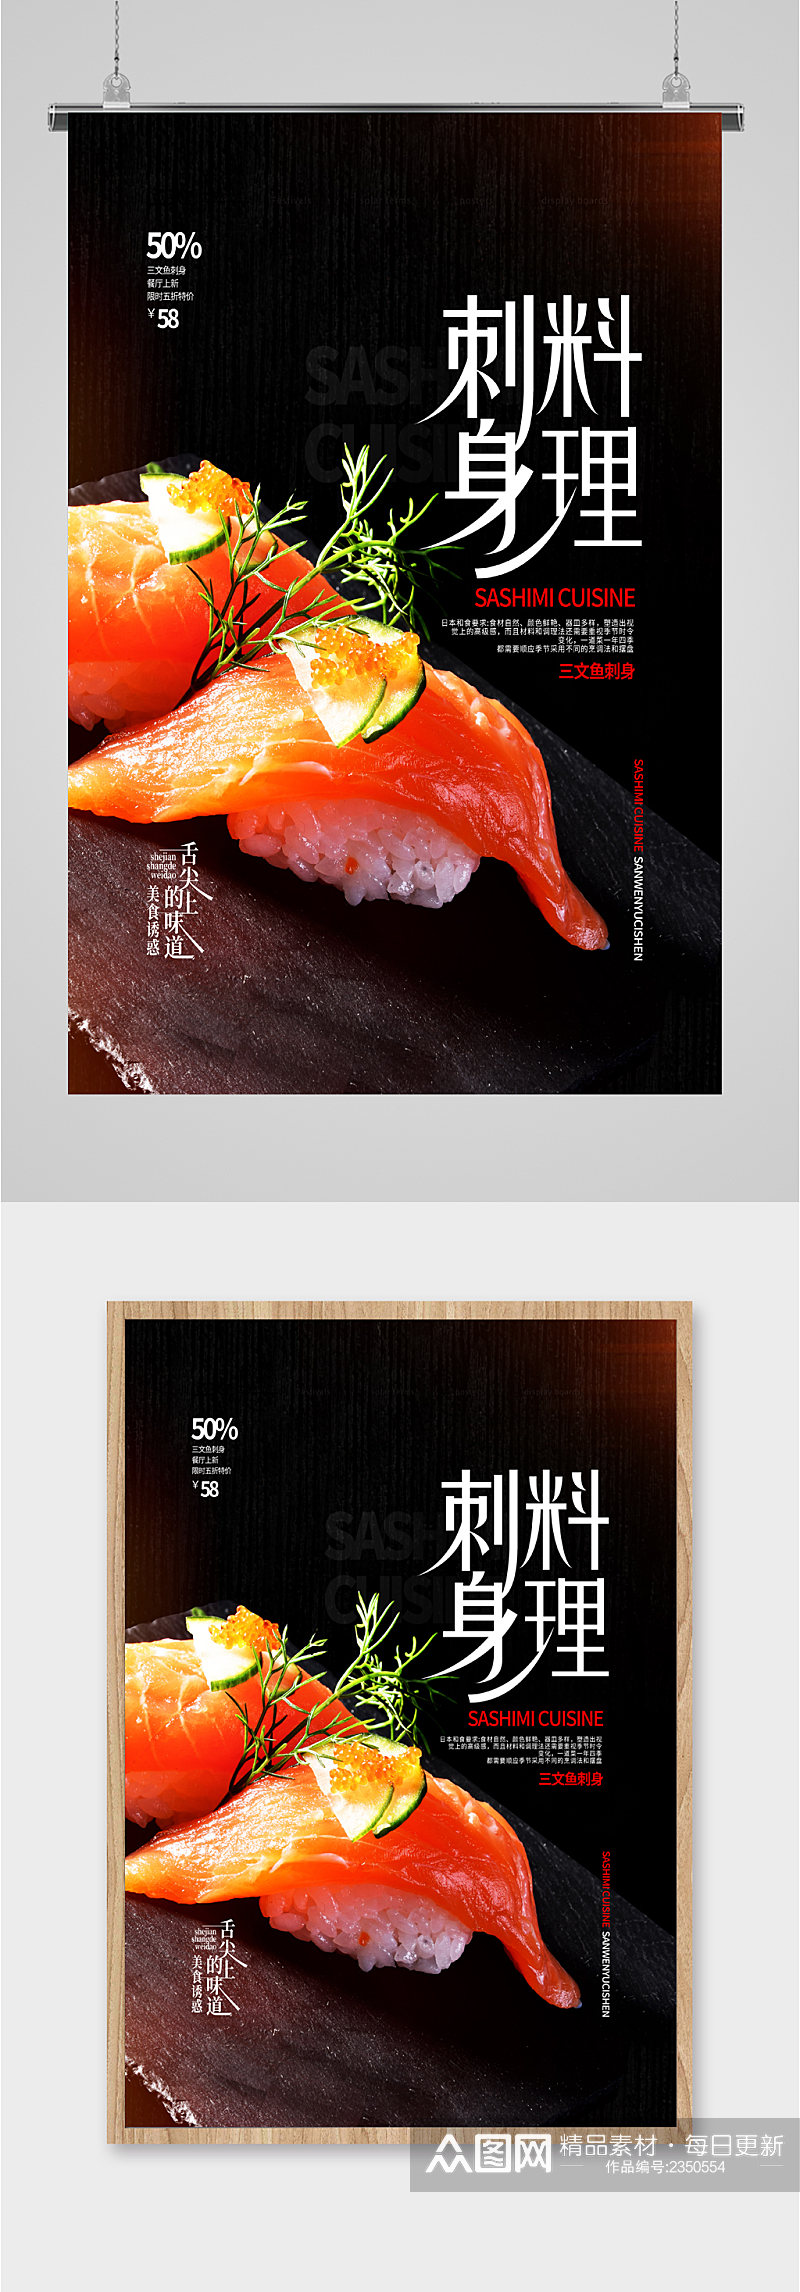 刺身料理日式美食海报素材